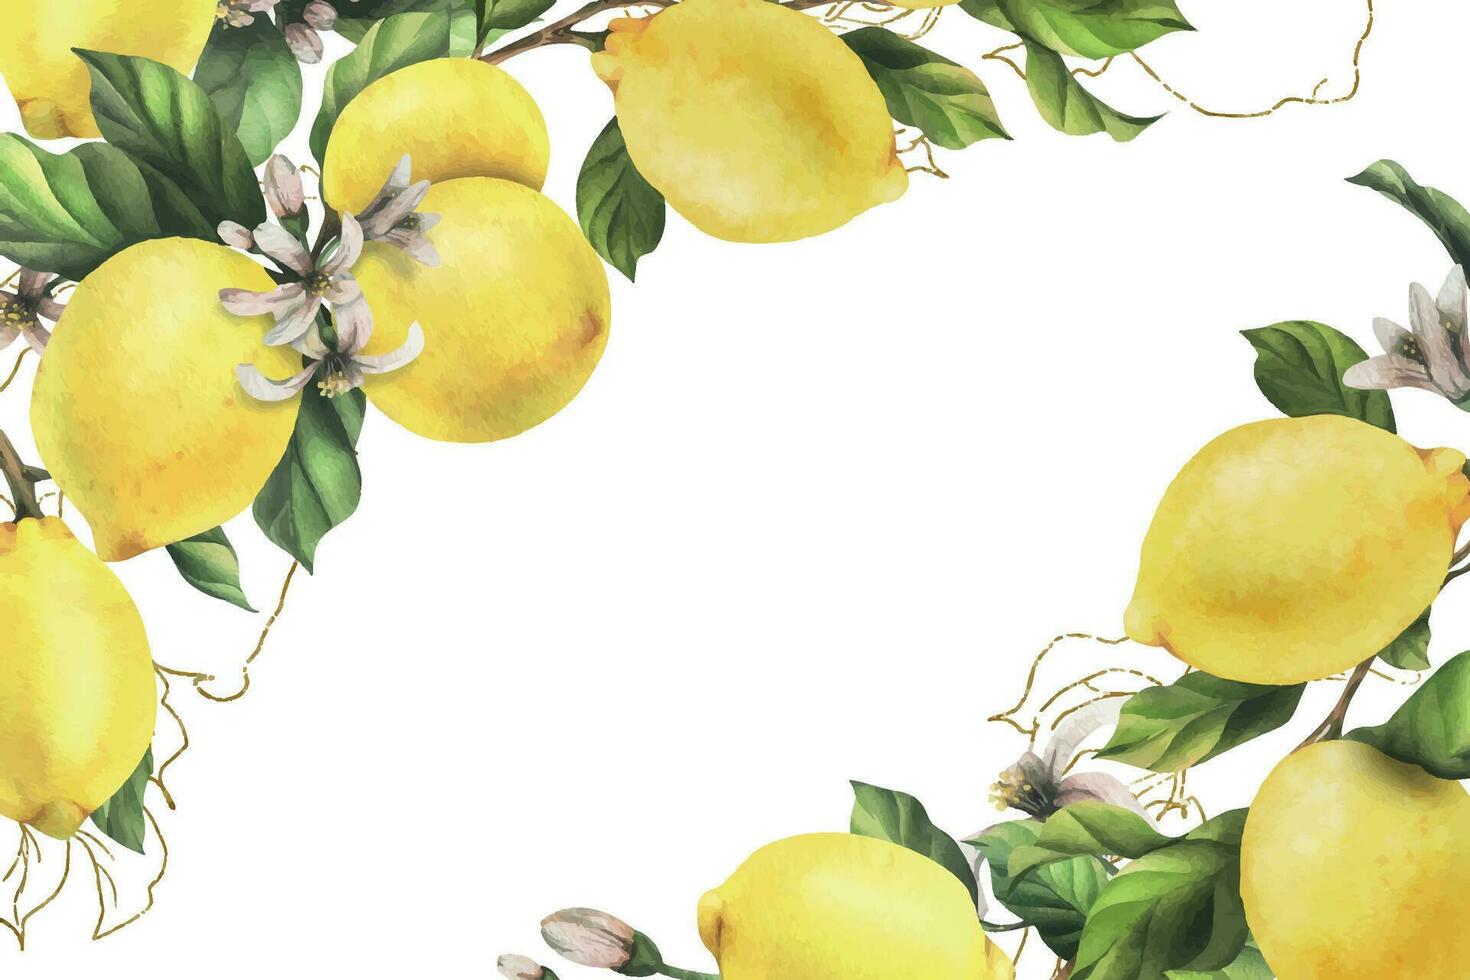 citroner är gul, saftig, mogen med grön löv, blomma knoppar på de grenar, hela och skivor. vattenfärg, hand dragen botanisk illustration. ram, mall på en vit bakgrund. vektor eps